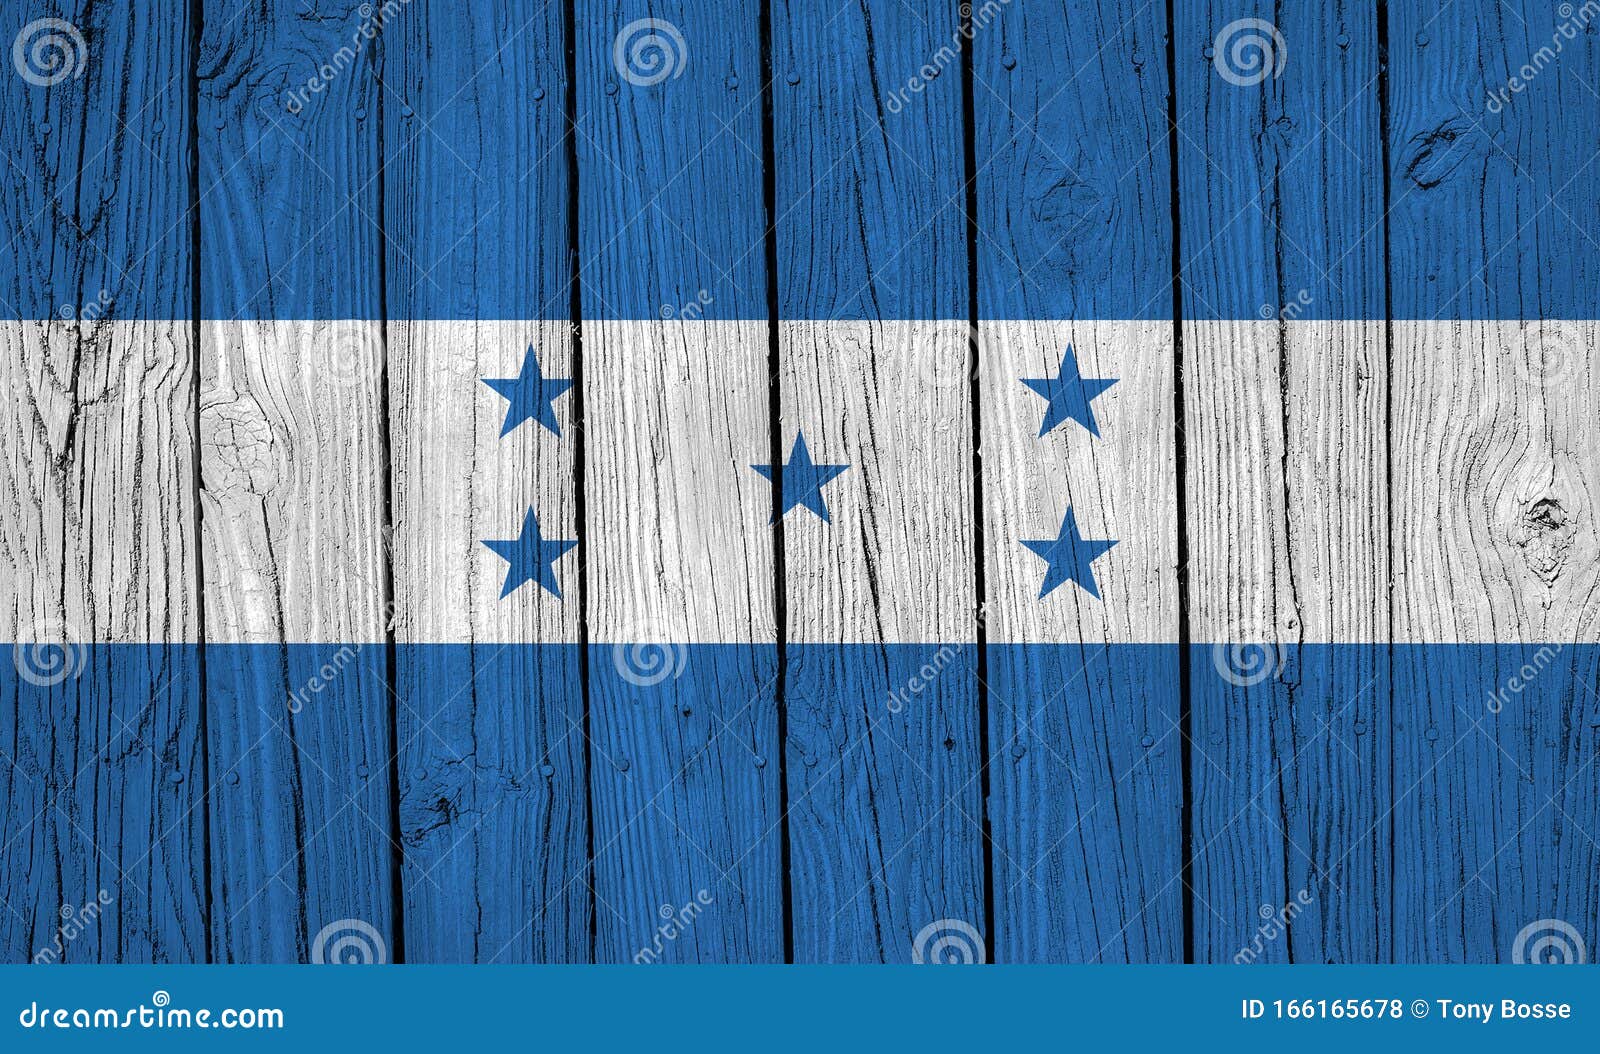 honduras flag over wood planks